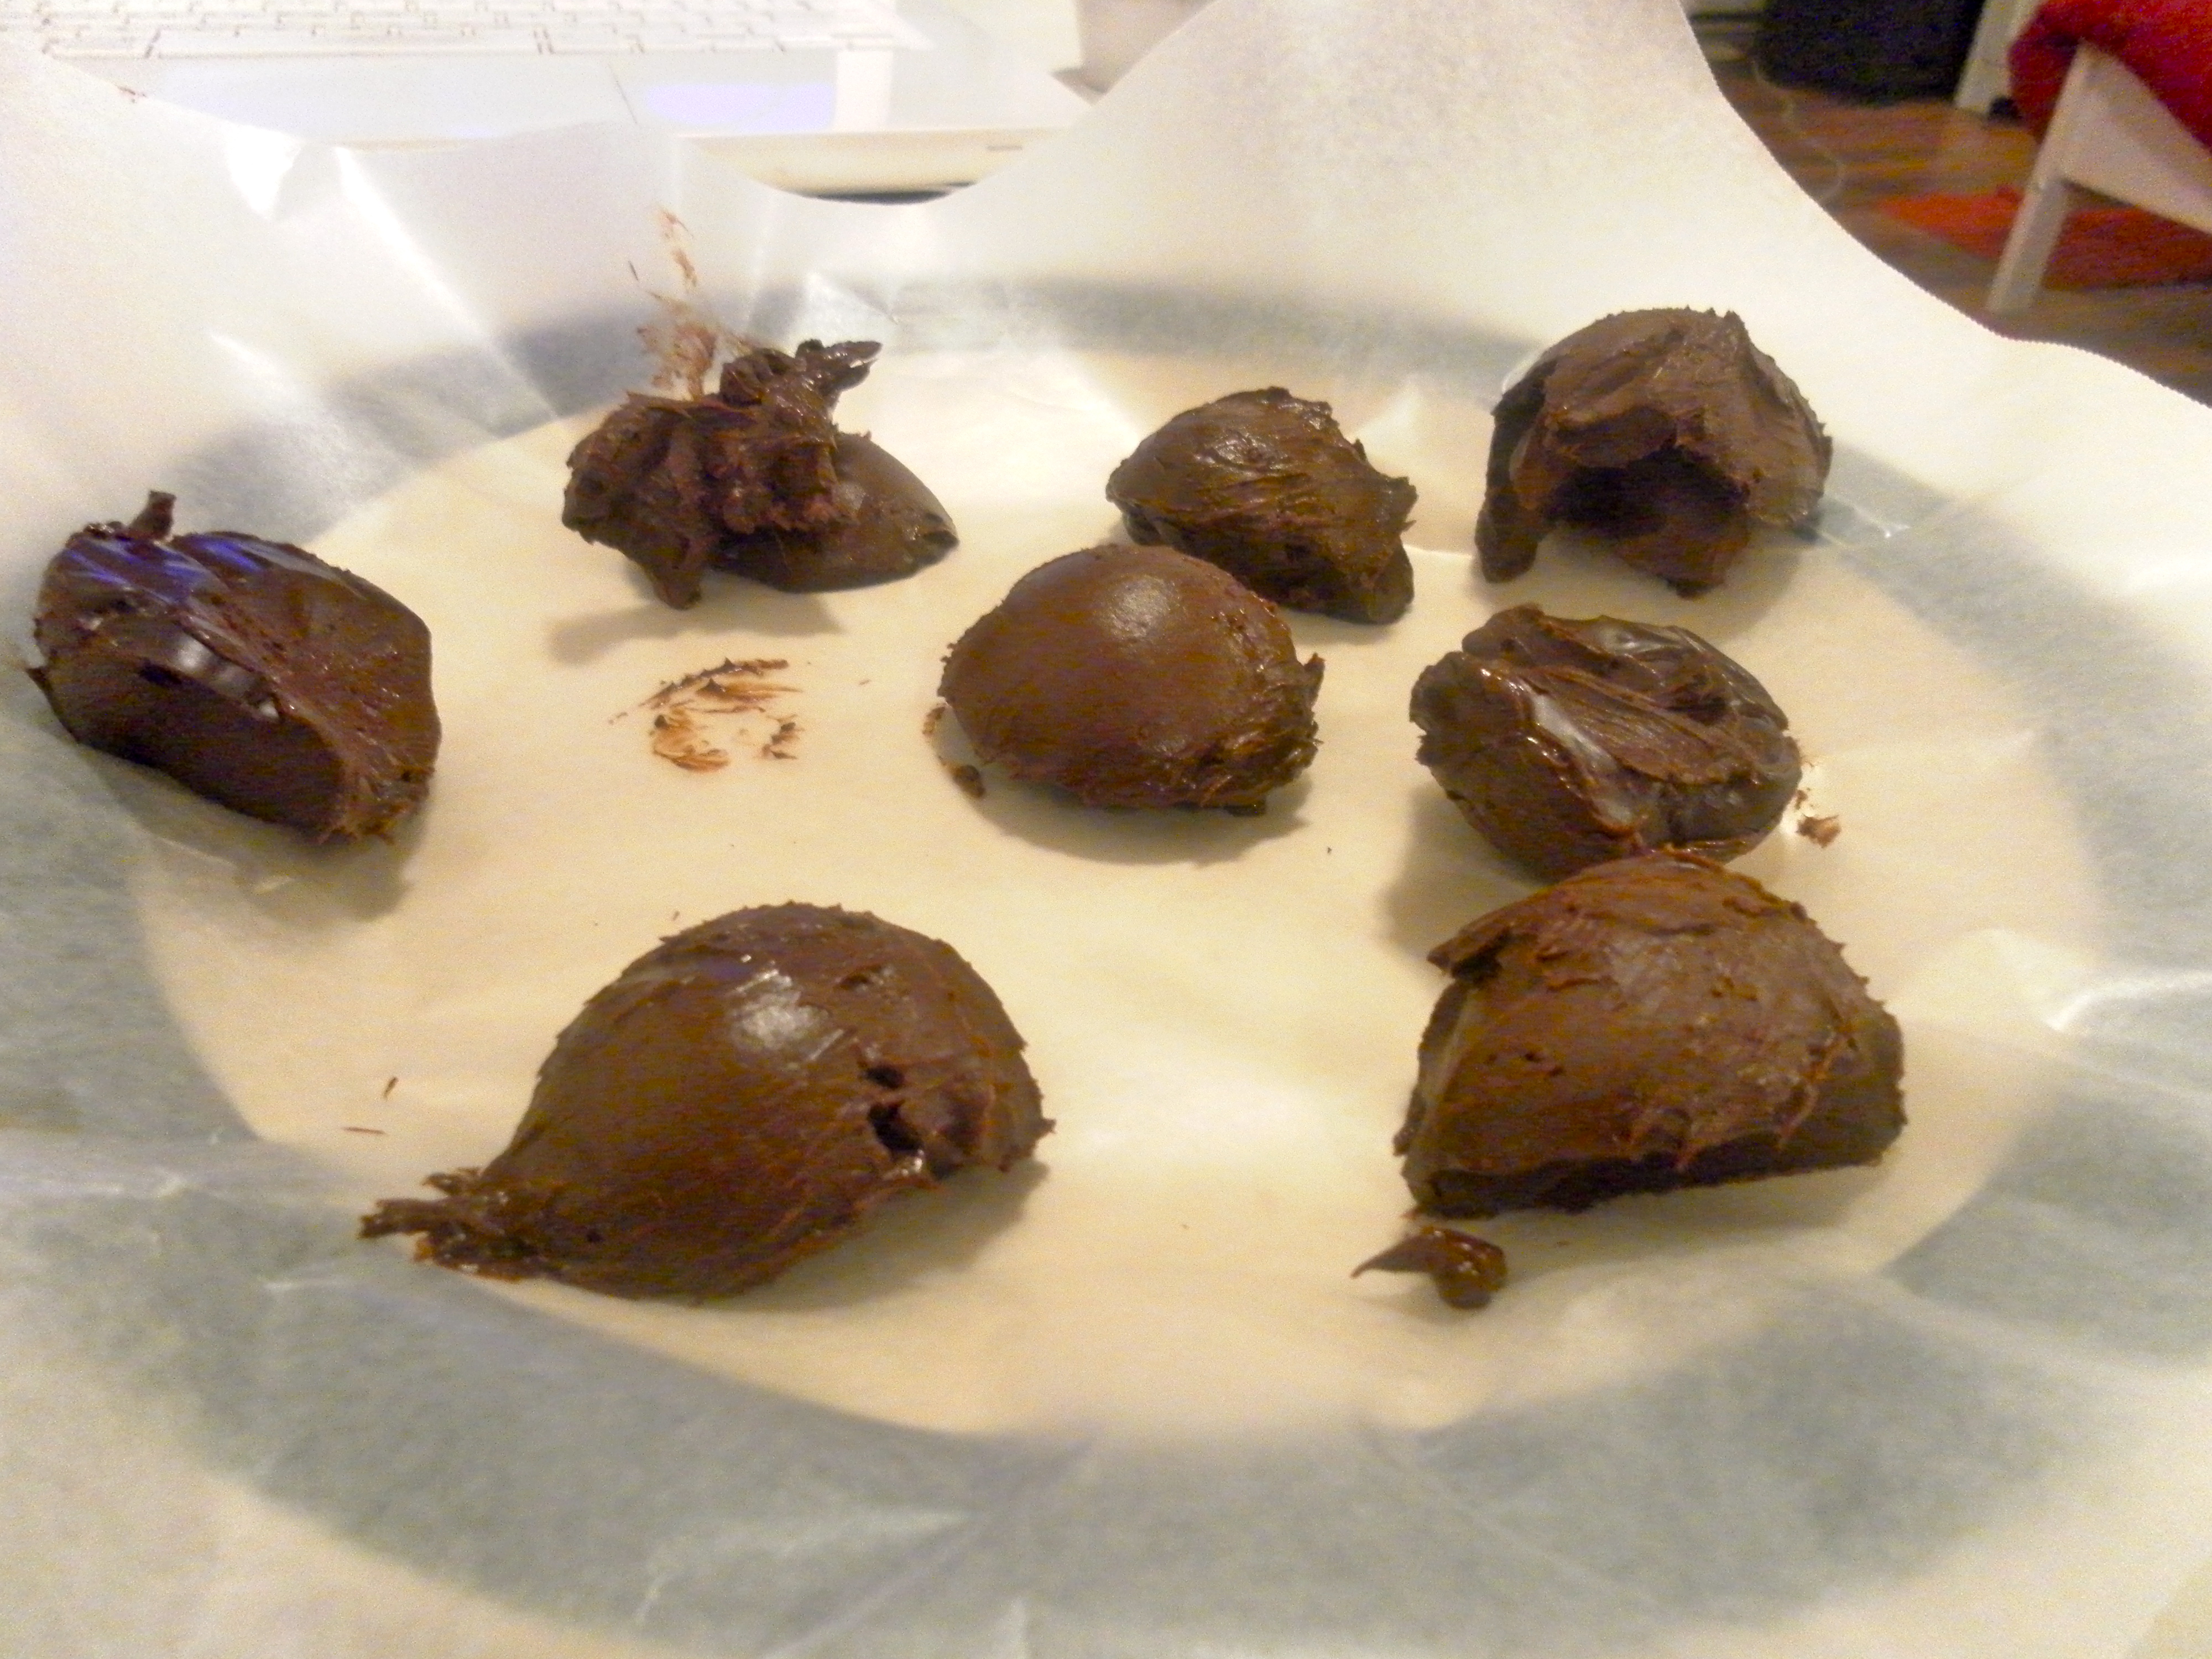 Making assorted chocolate truffles